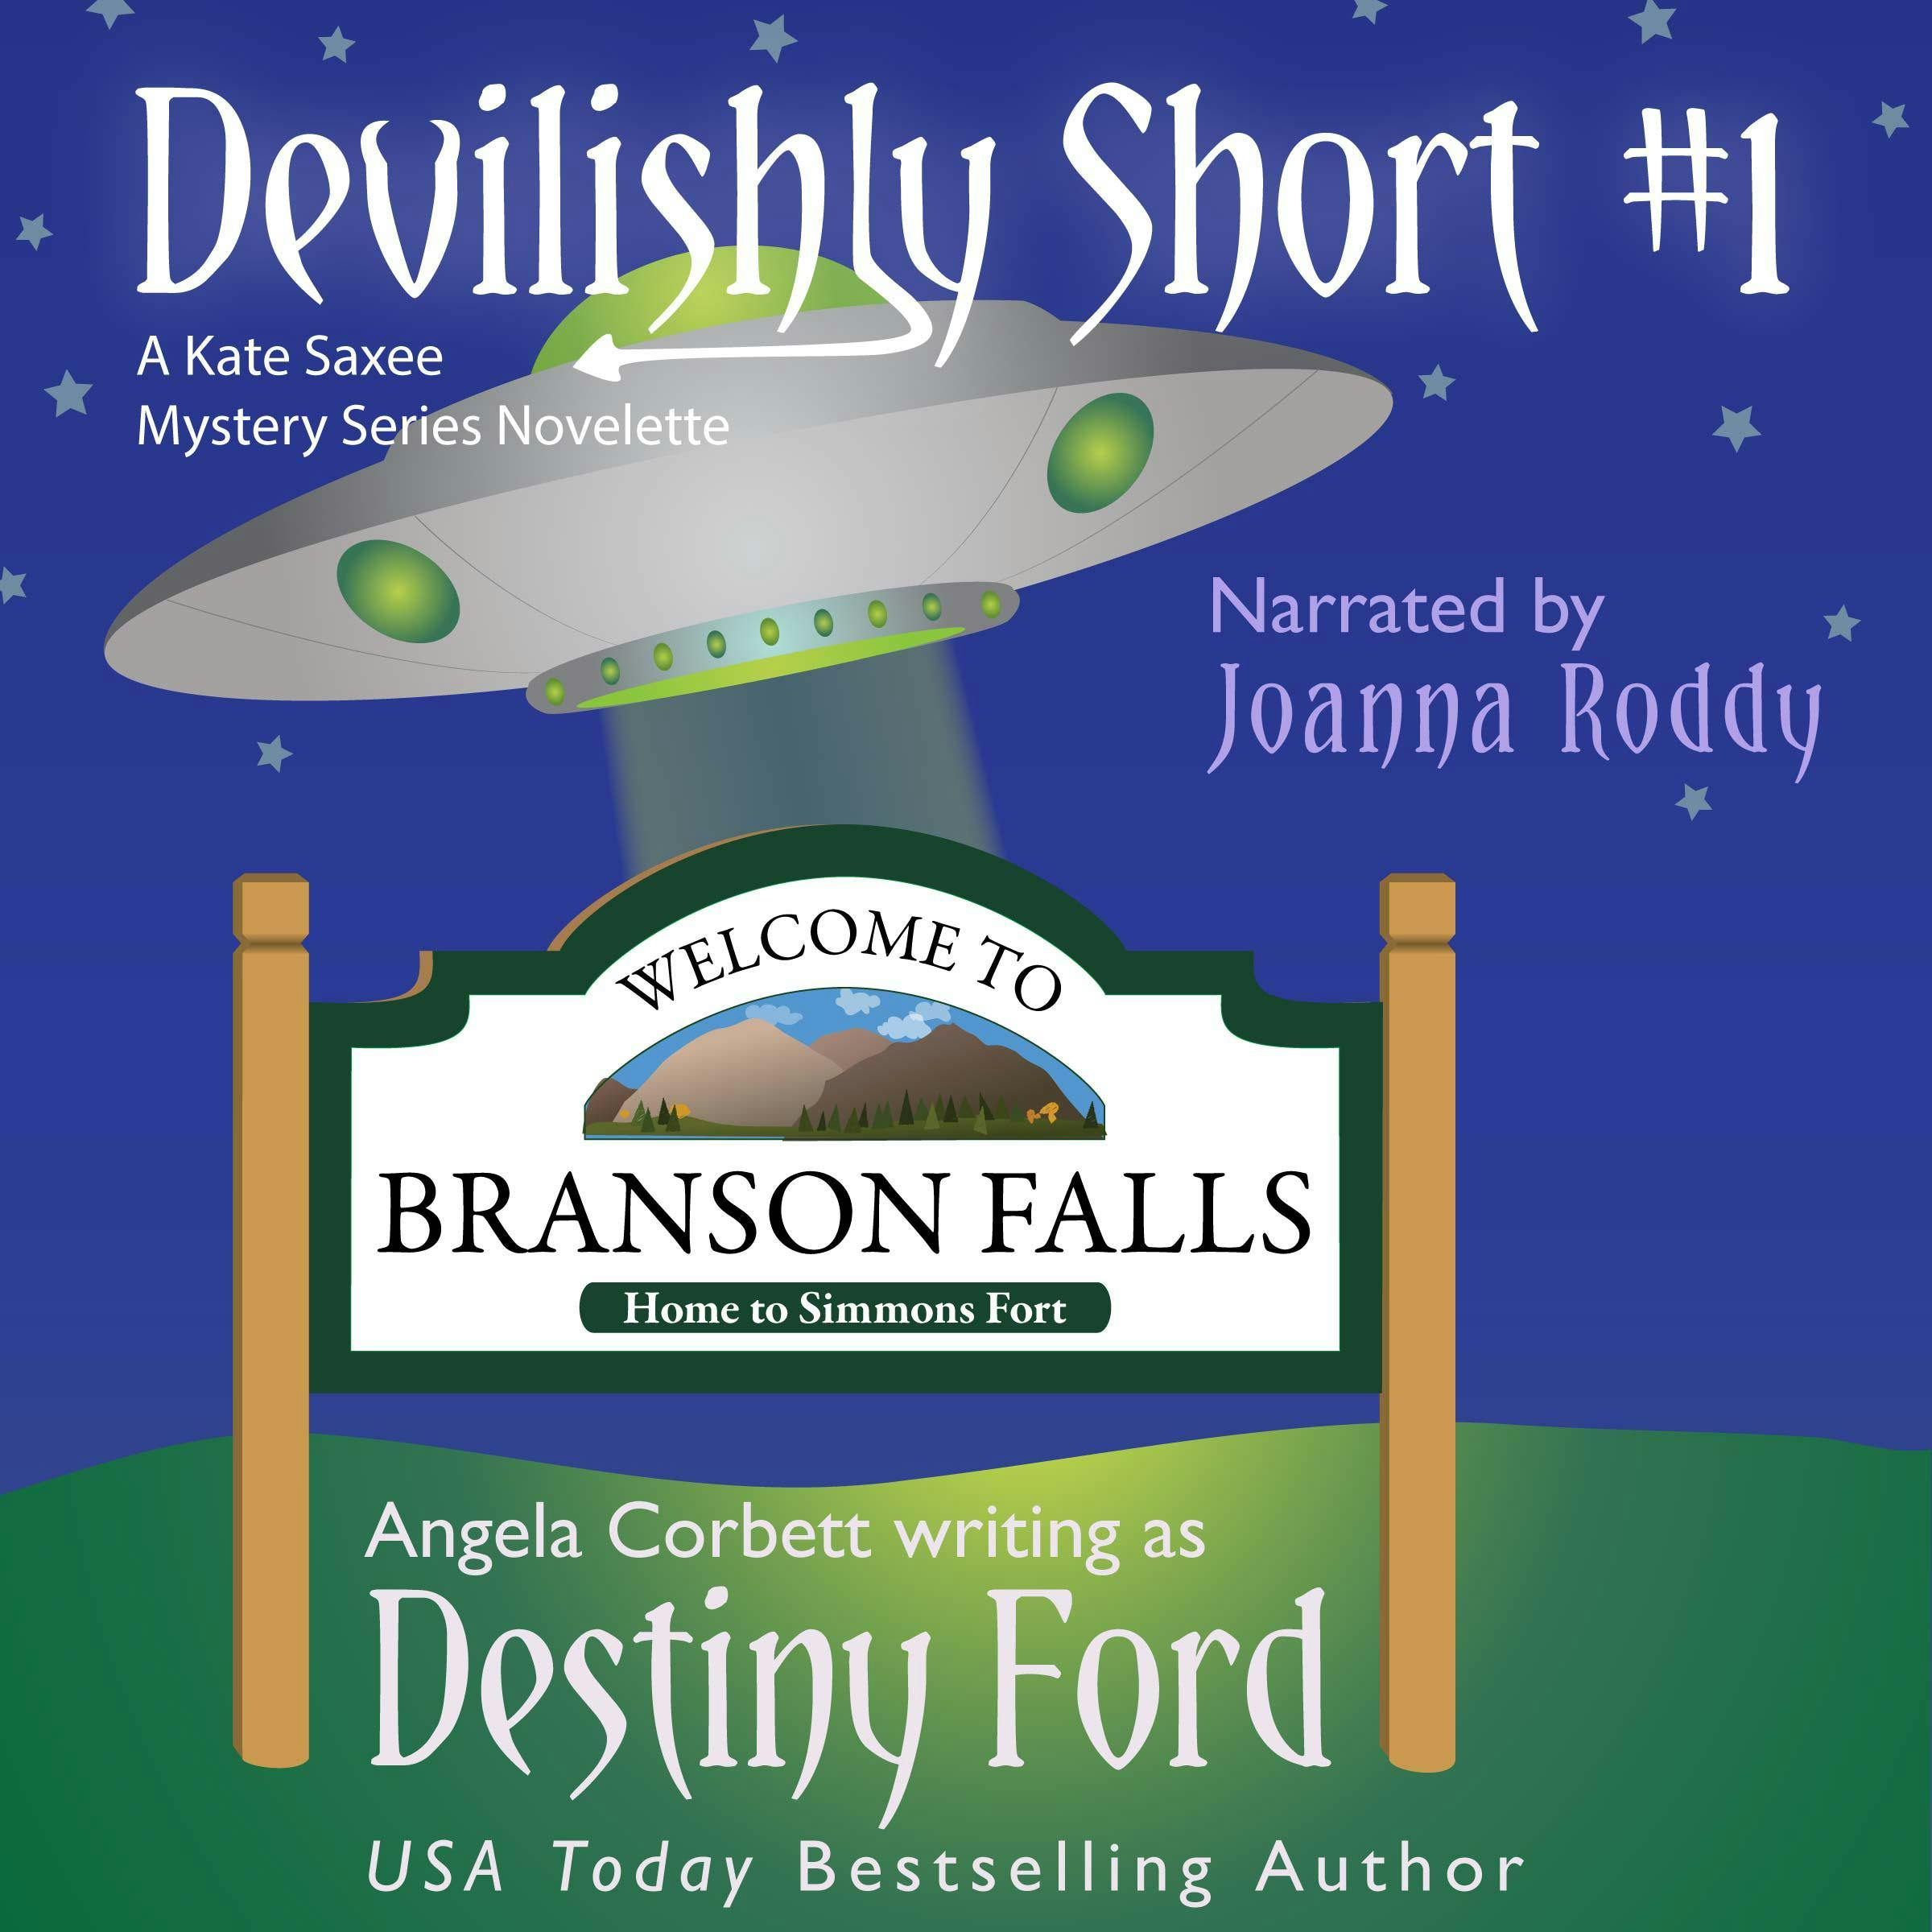 Devilishly Short 1 - Angela Corbett, Destiny Ford